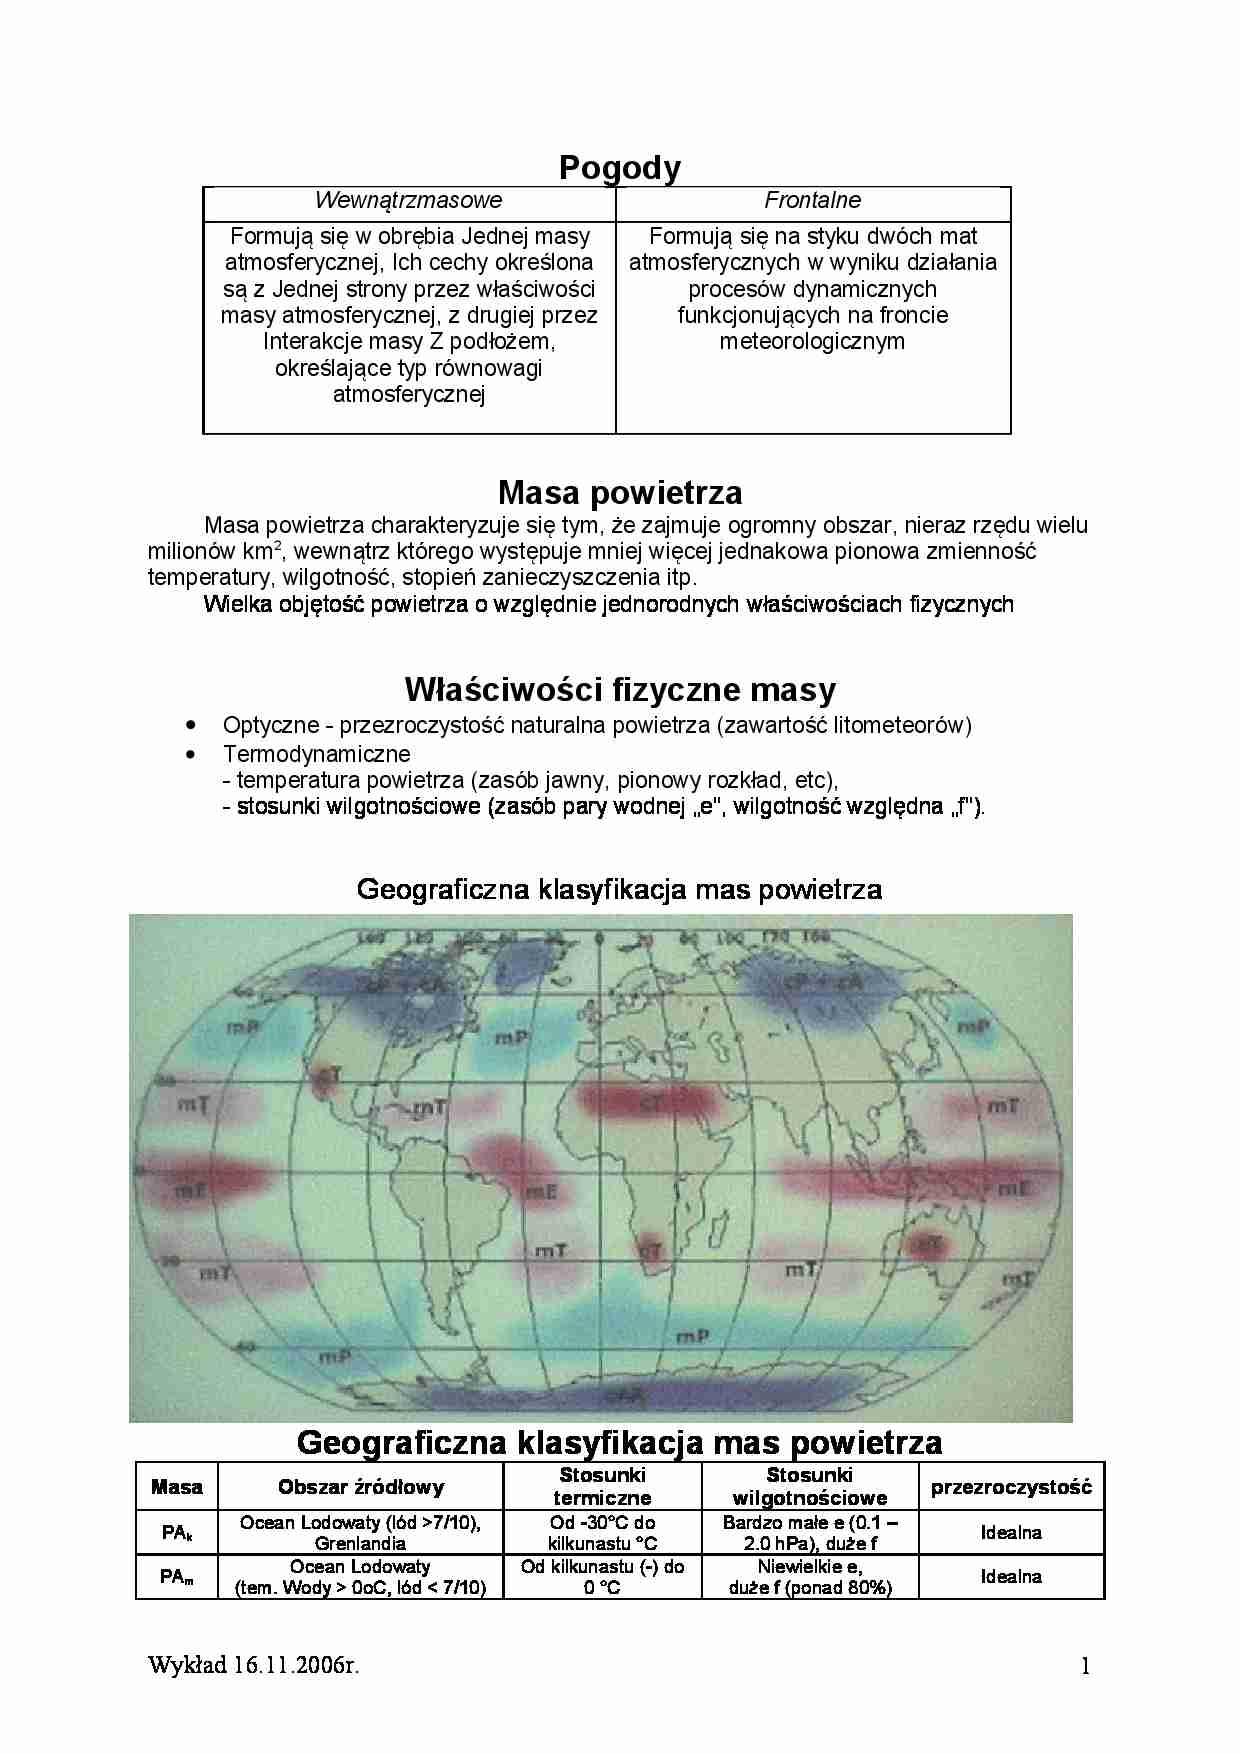 Pogoda-mapa synoptyczna - strona 1